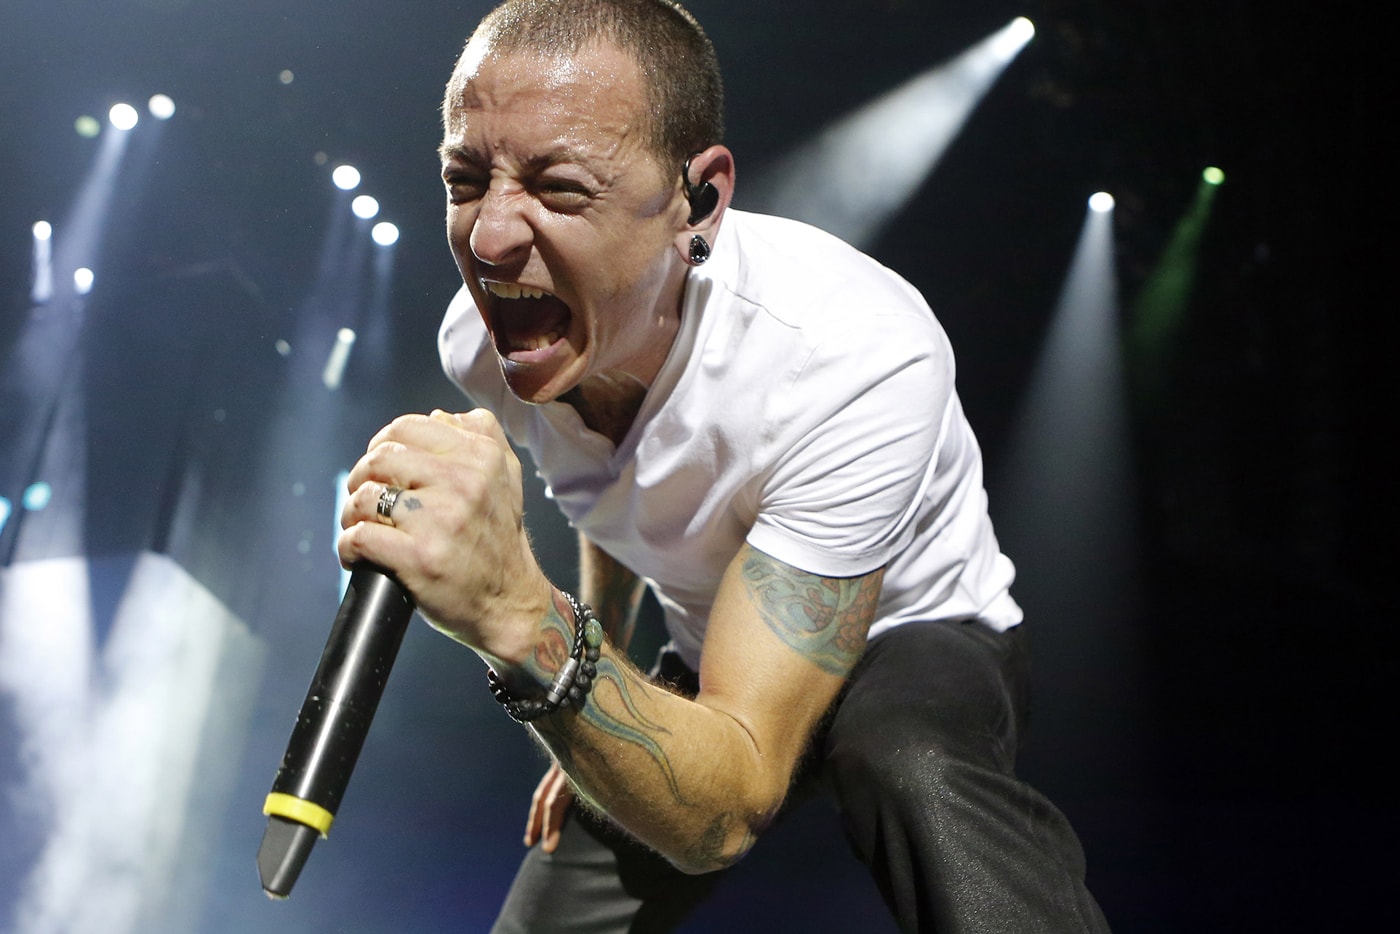 リンキン・パークが20年前からリリースが望まれていた幻の曲“Pictureboard”を遂にリリース Linkin Park to Drop Unreleased 'Hybrid Theory'-Era Track "Pictureboard"